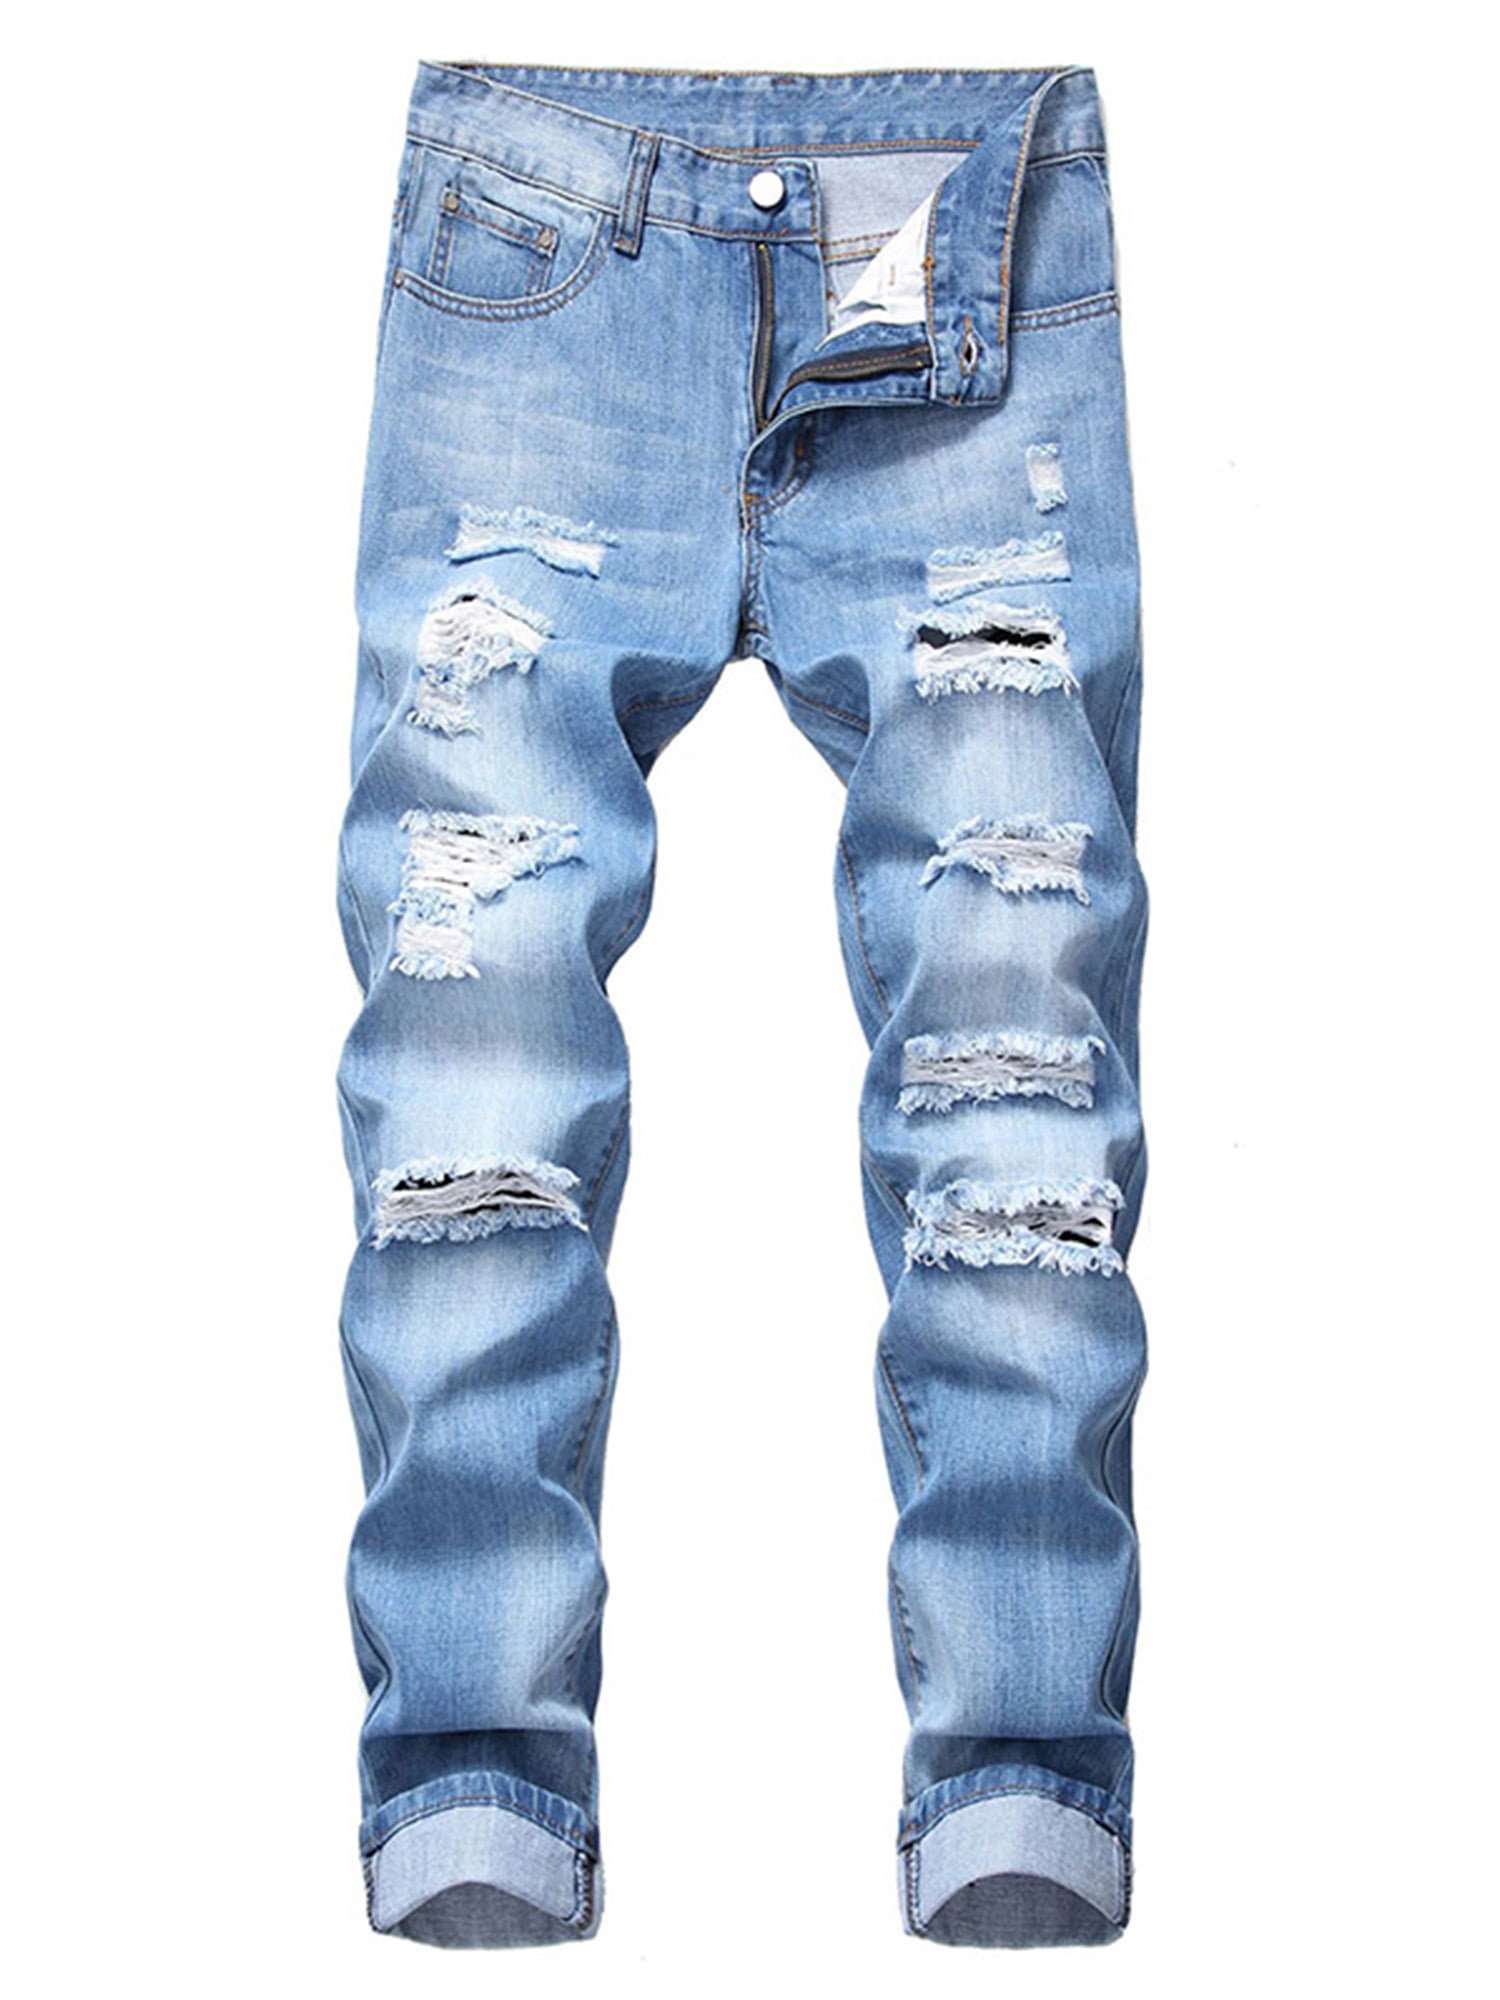 hyppigt Fra Narkoman Glonme Mens Blue Slim Fit Jeans Stretch Destroyed Ripped Skinny Jeans Hole Denim  Pants - Walmart.com